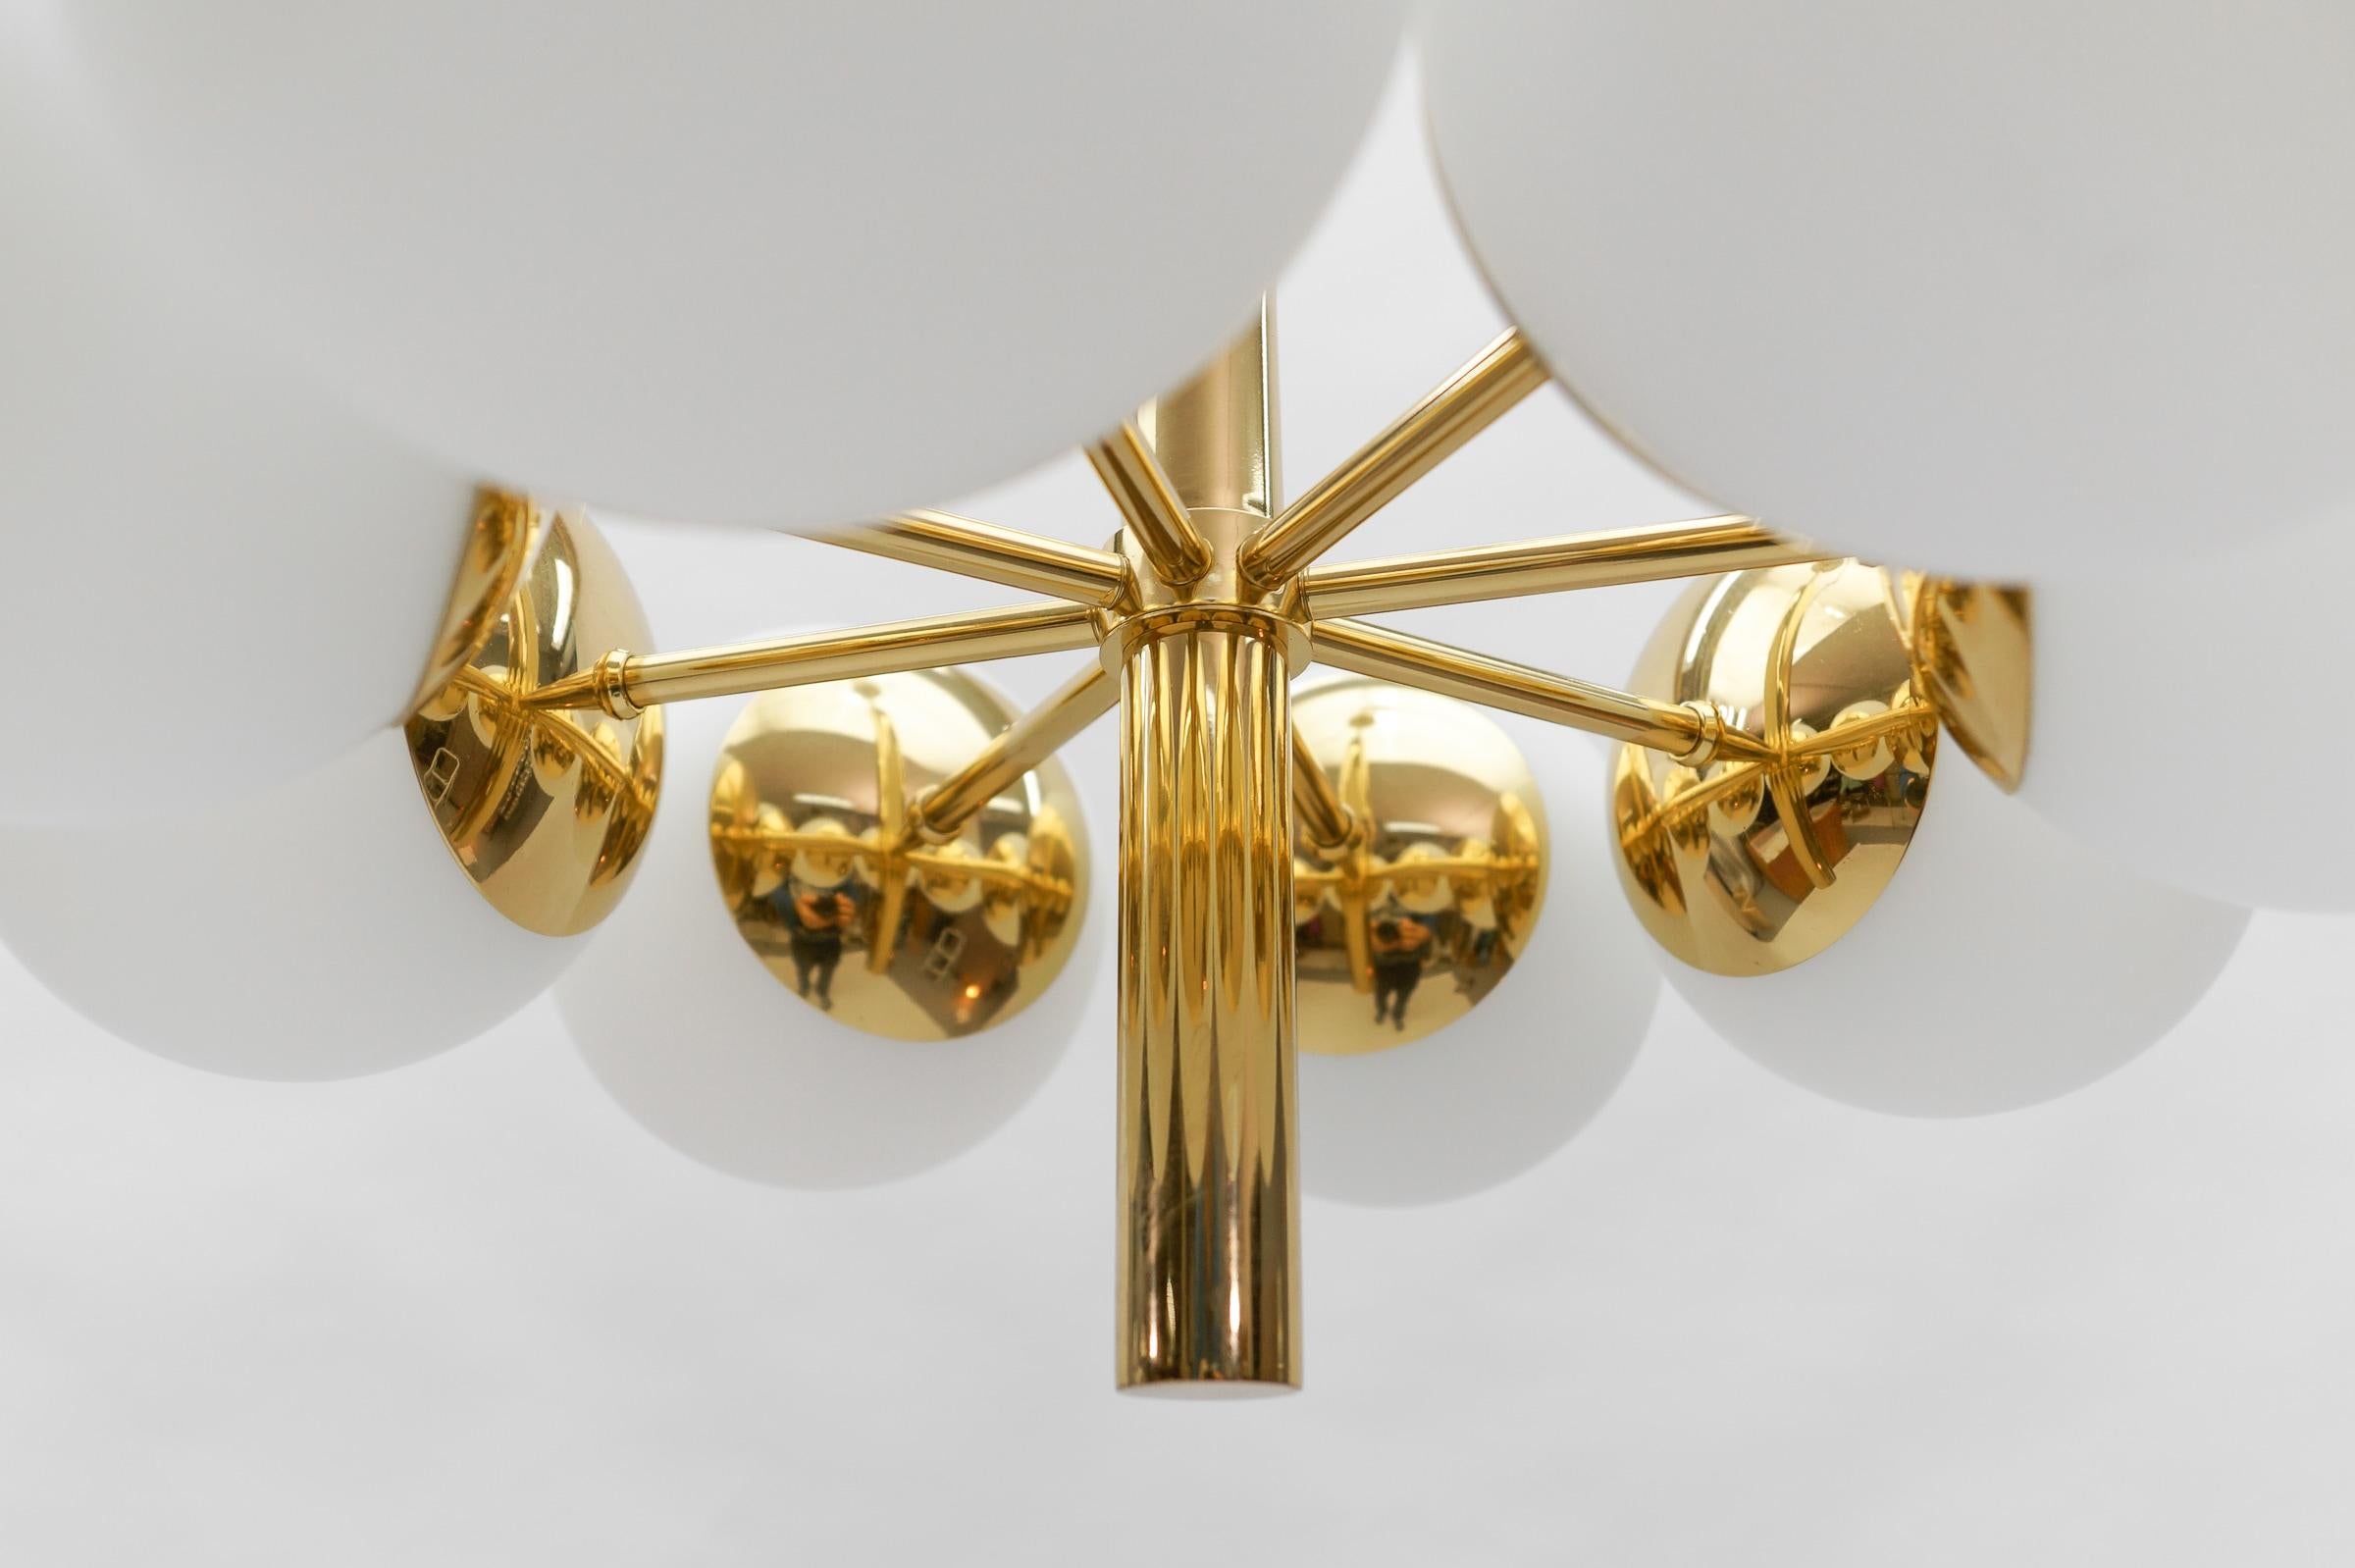 Mid-Century Modern Sputnik Pendant Lamp by Kaiser Leuchten, Germany1950s For Sale 4